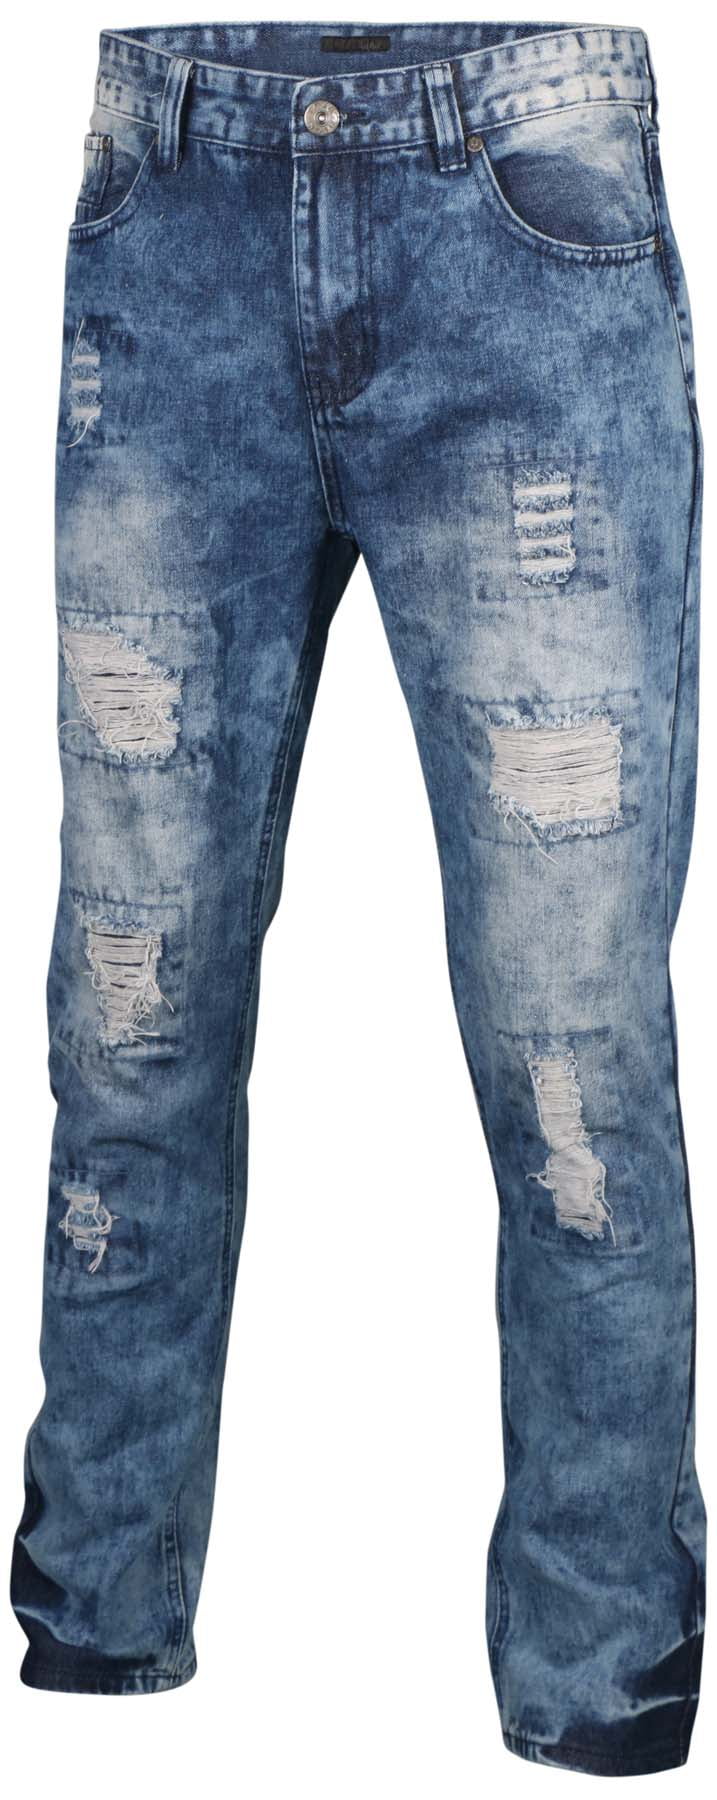 true rock jeans